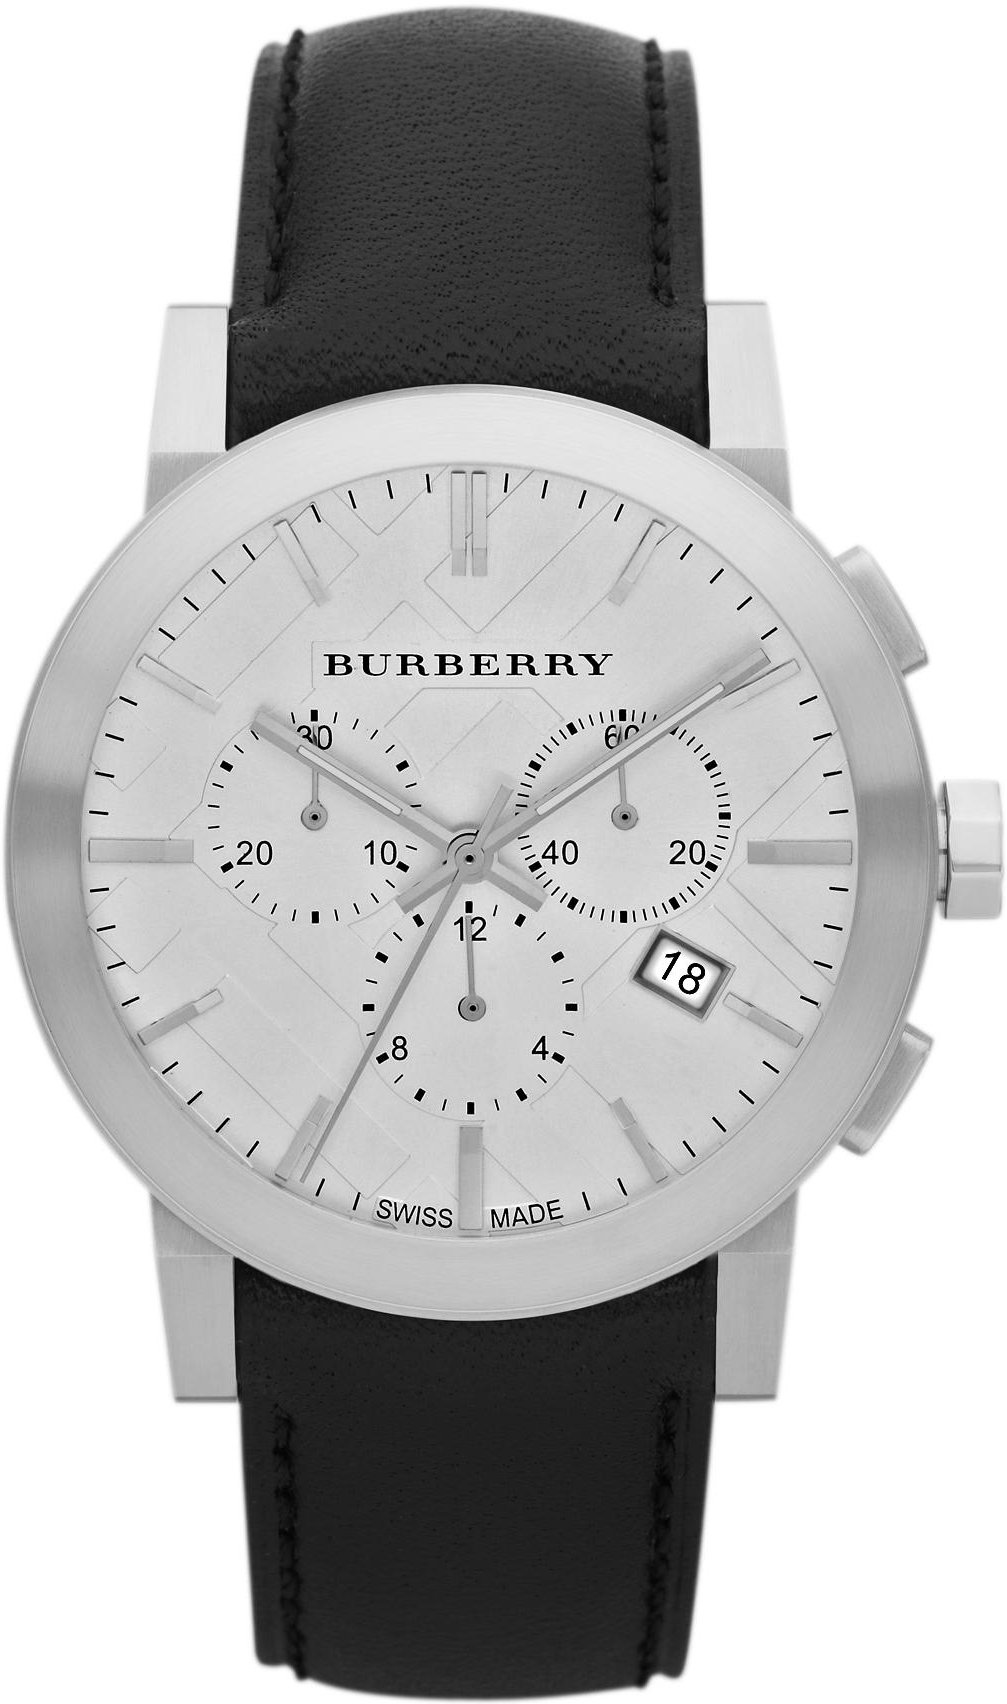 Top 110+ imagen burberry watch men